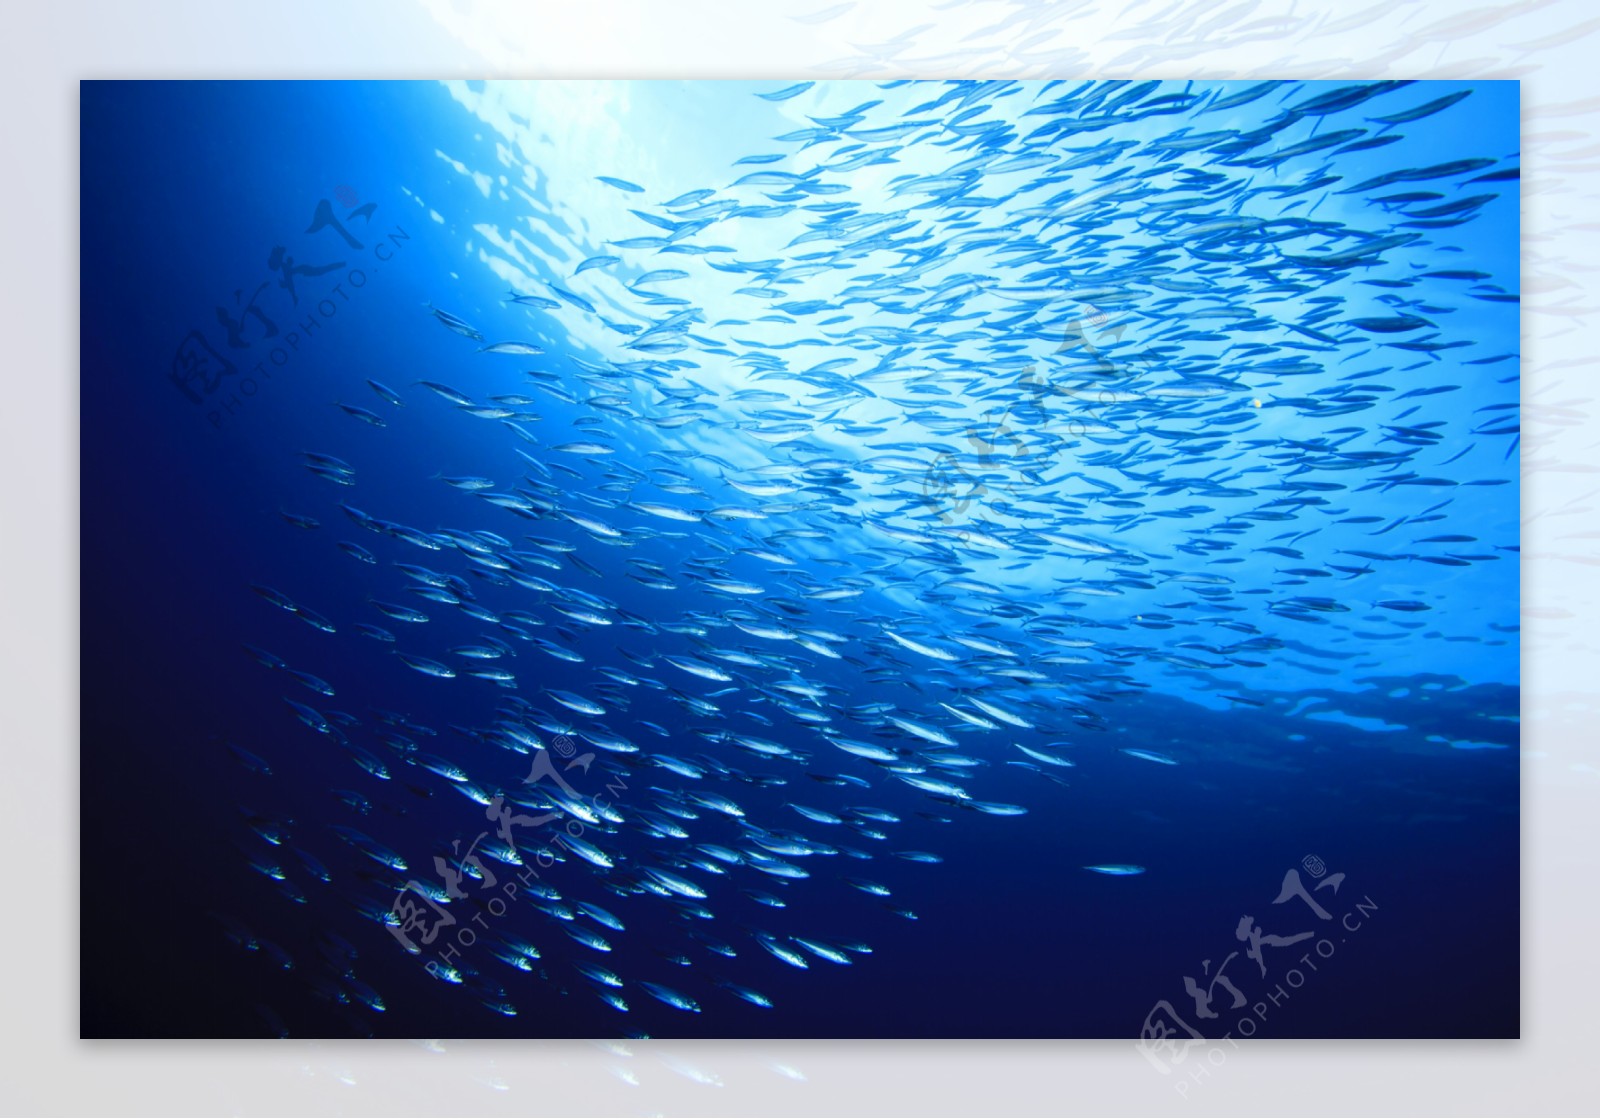 蓝色海洋鱼群图片